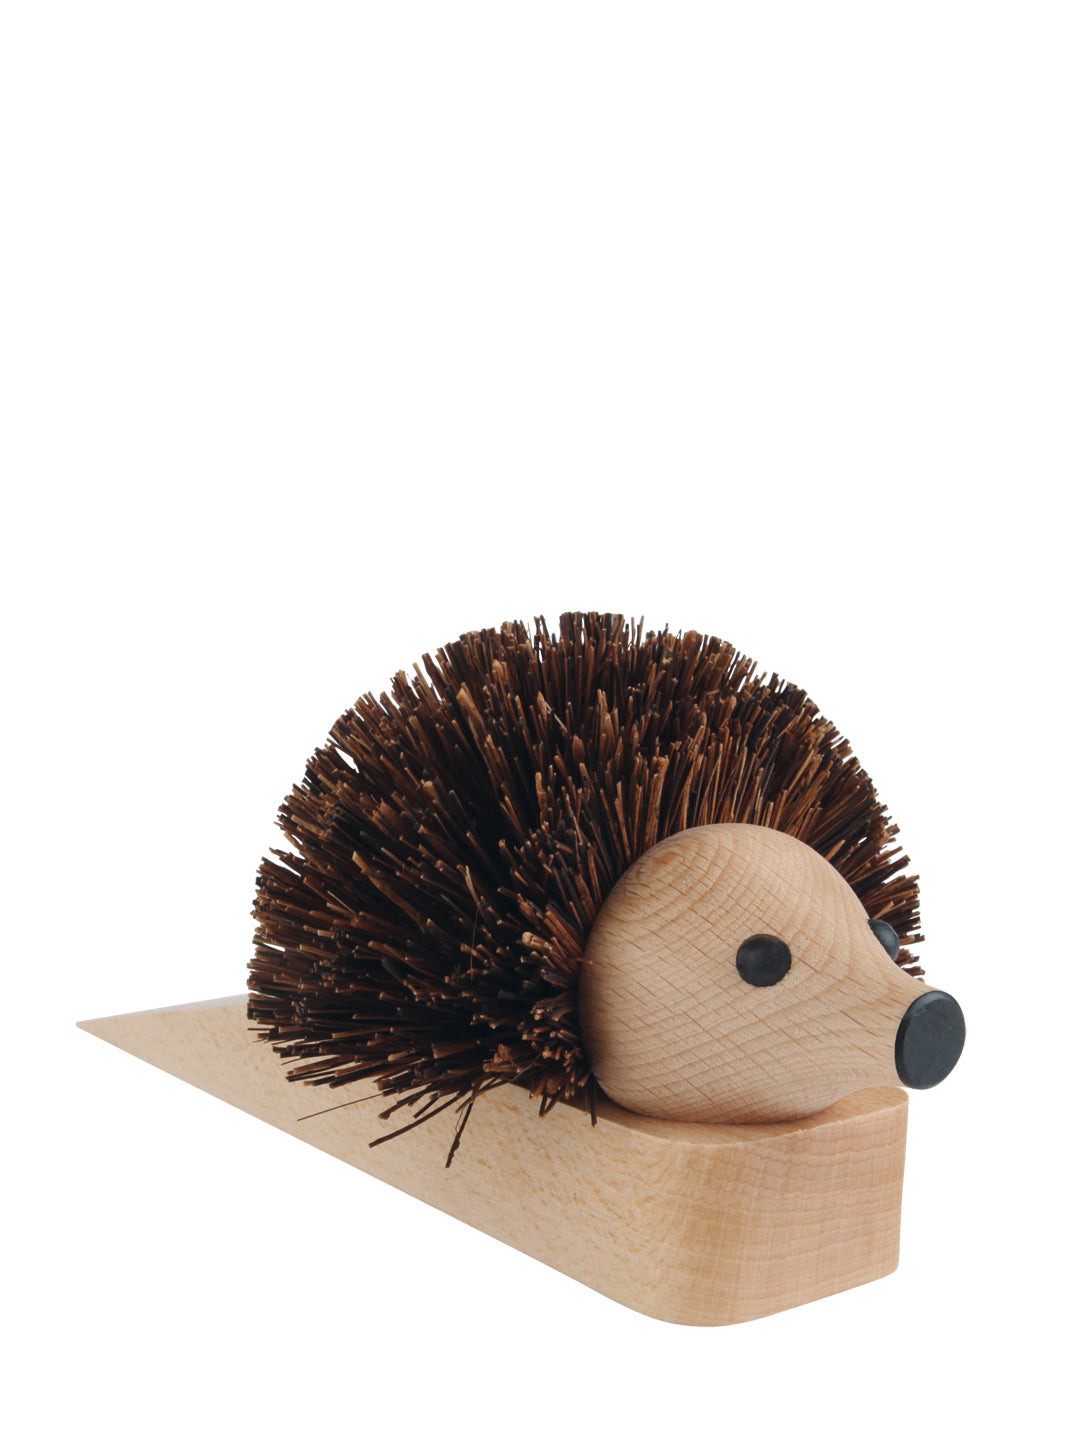 Hedgehog doorstop